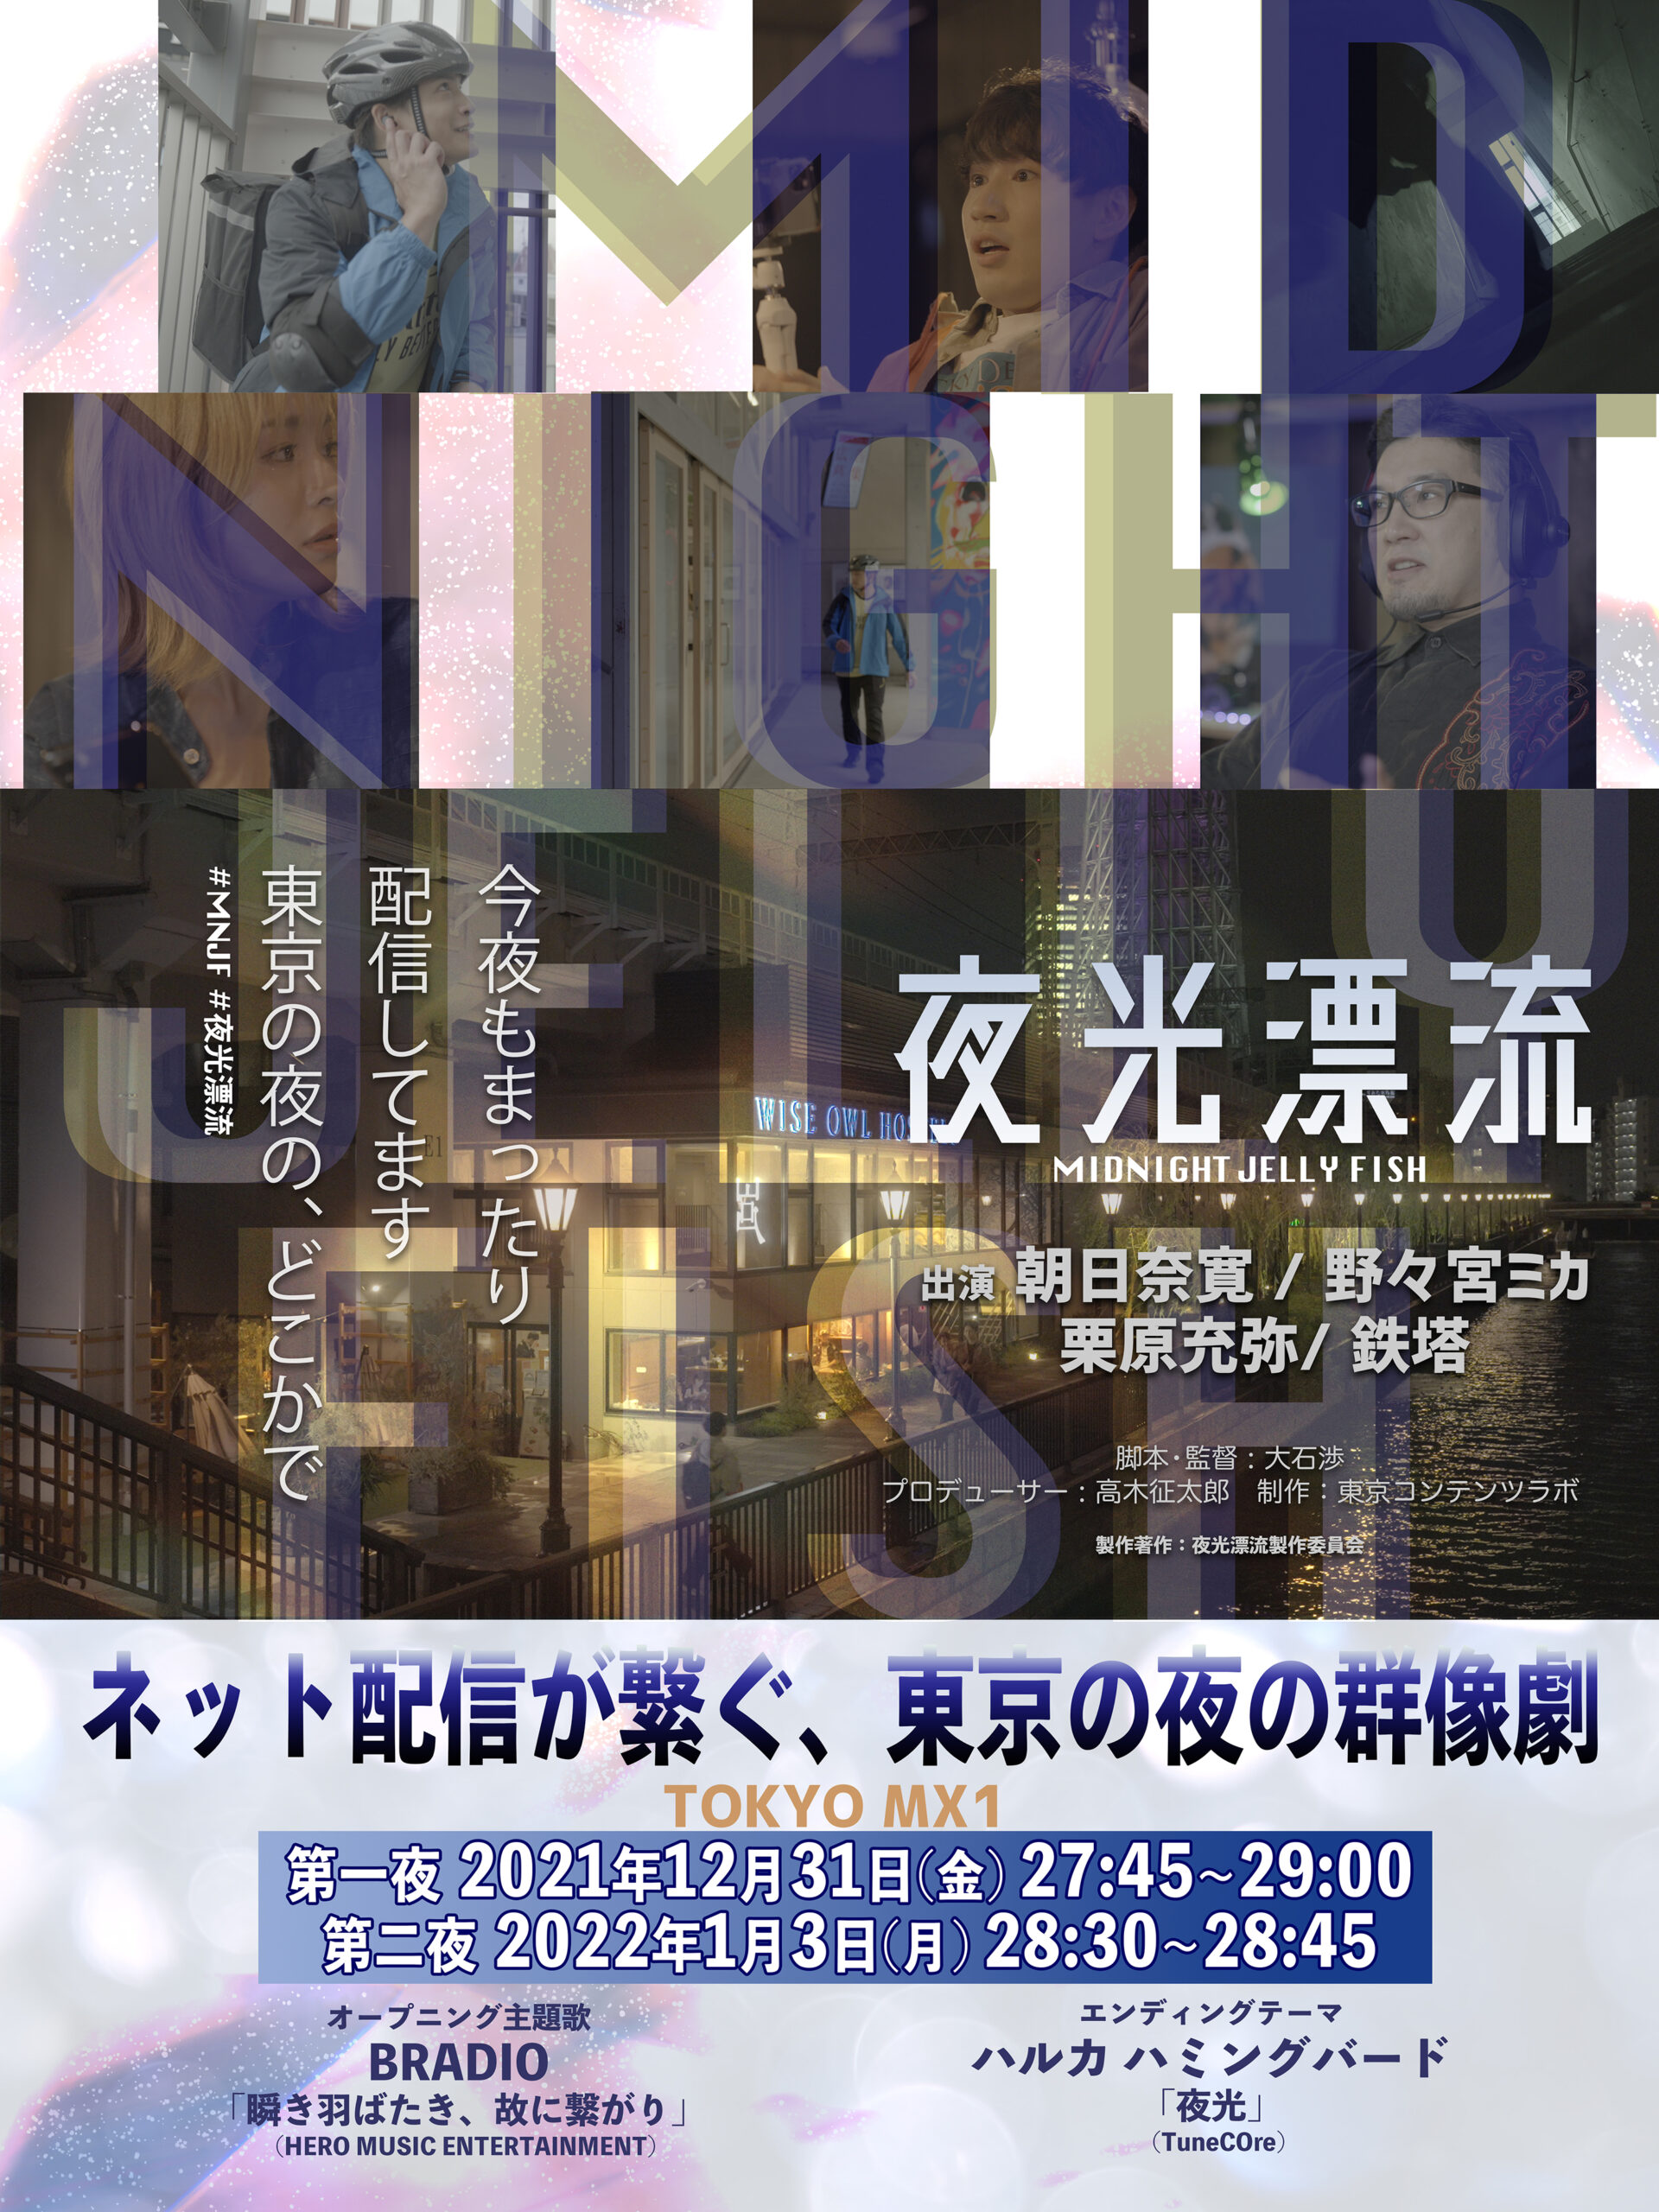 「夜行漂流」TOKYO MX1